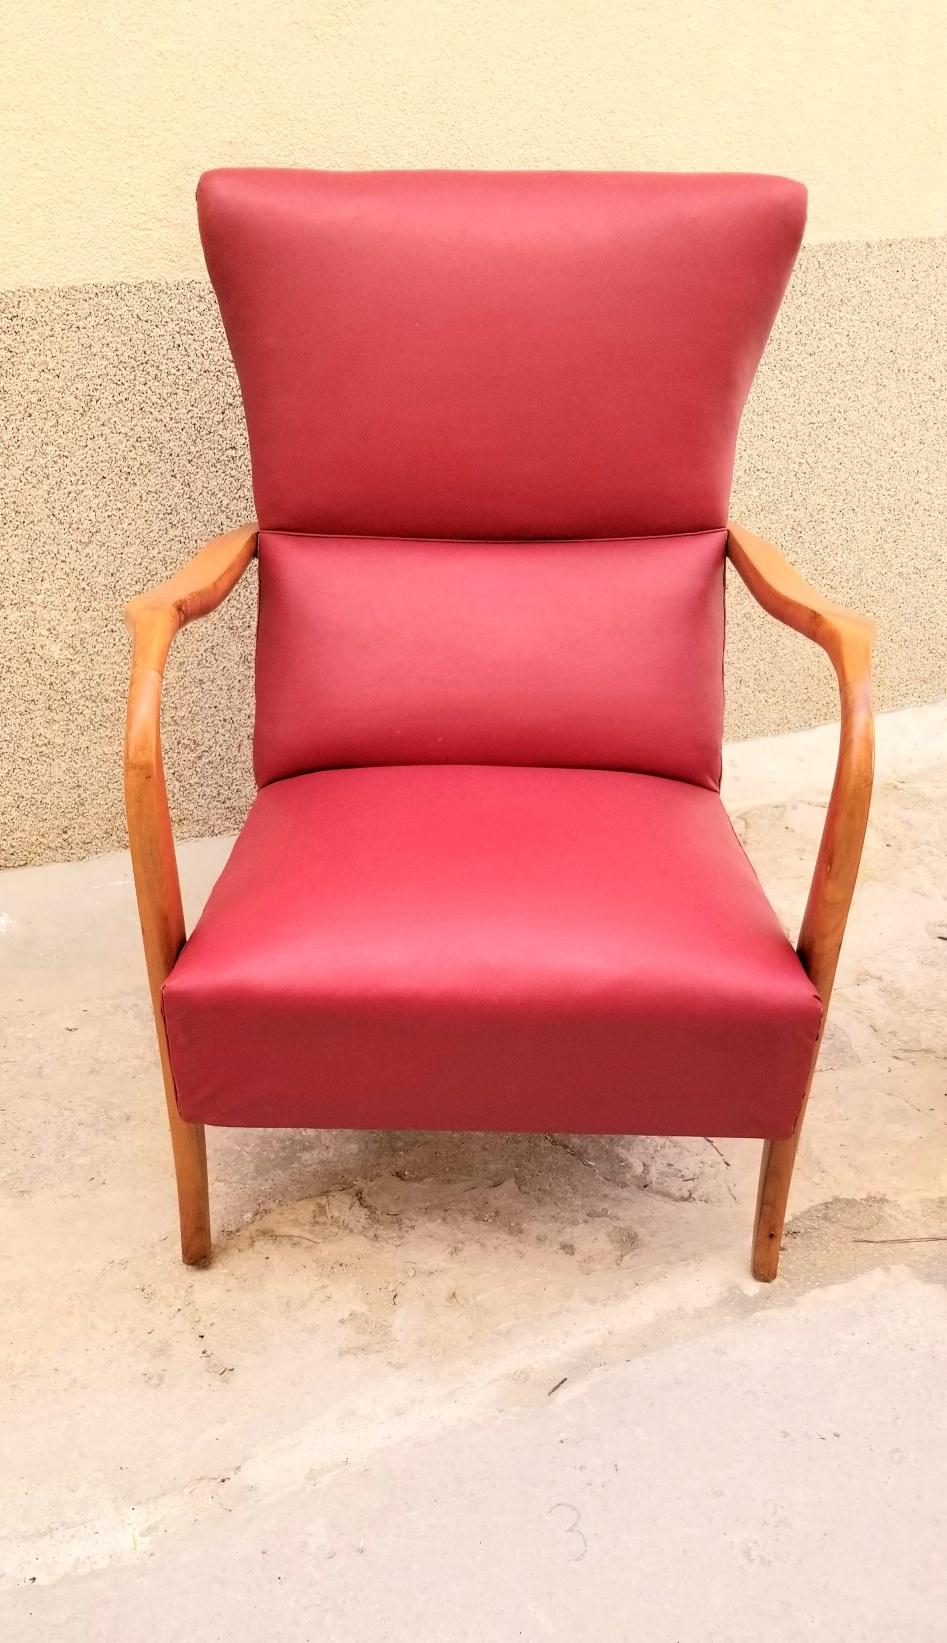 Paire de chaises italiennes ,sculpturales et confortables en bon état d'origine.
Livraison à domicile sur le territoire continental des États-Unis 500
 